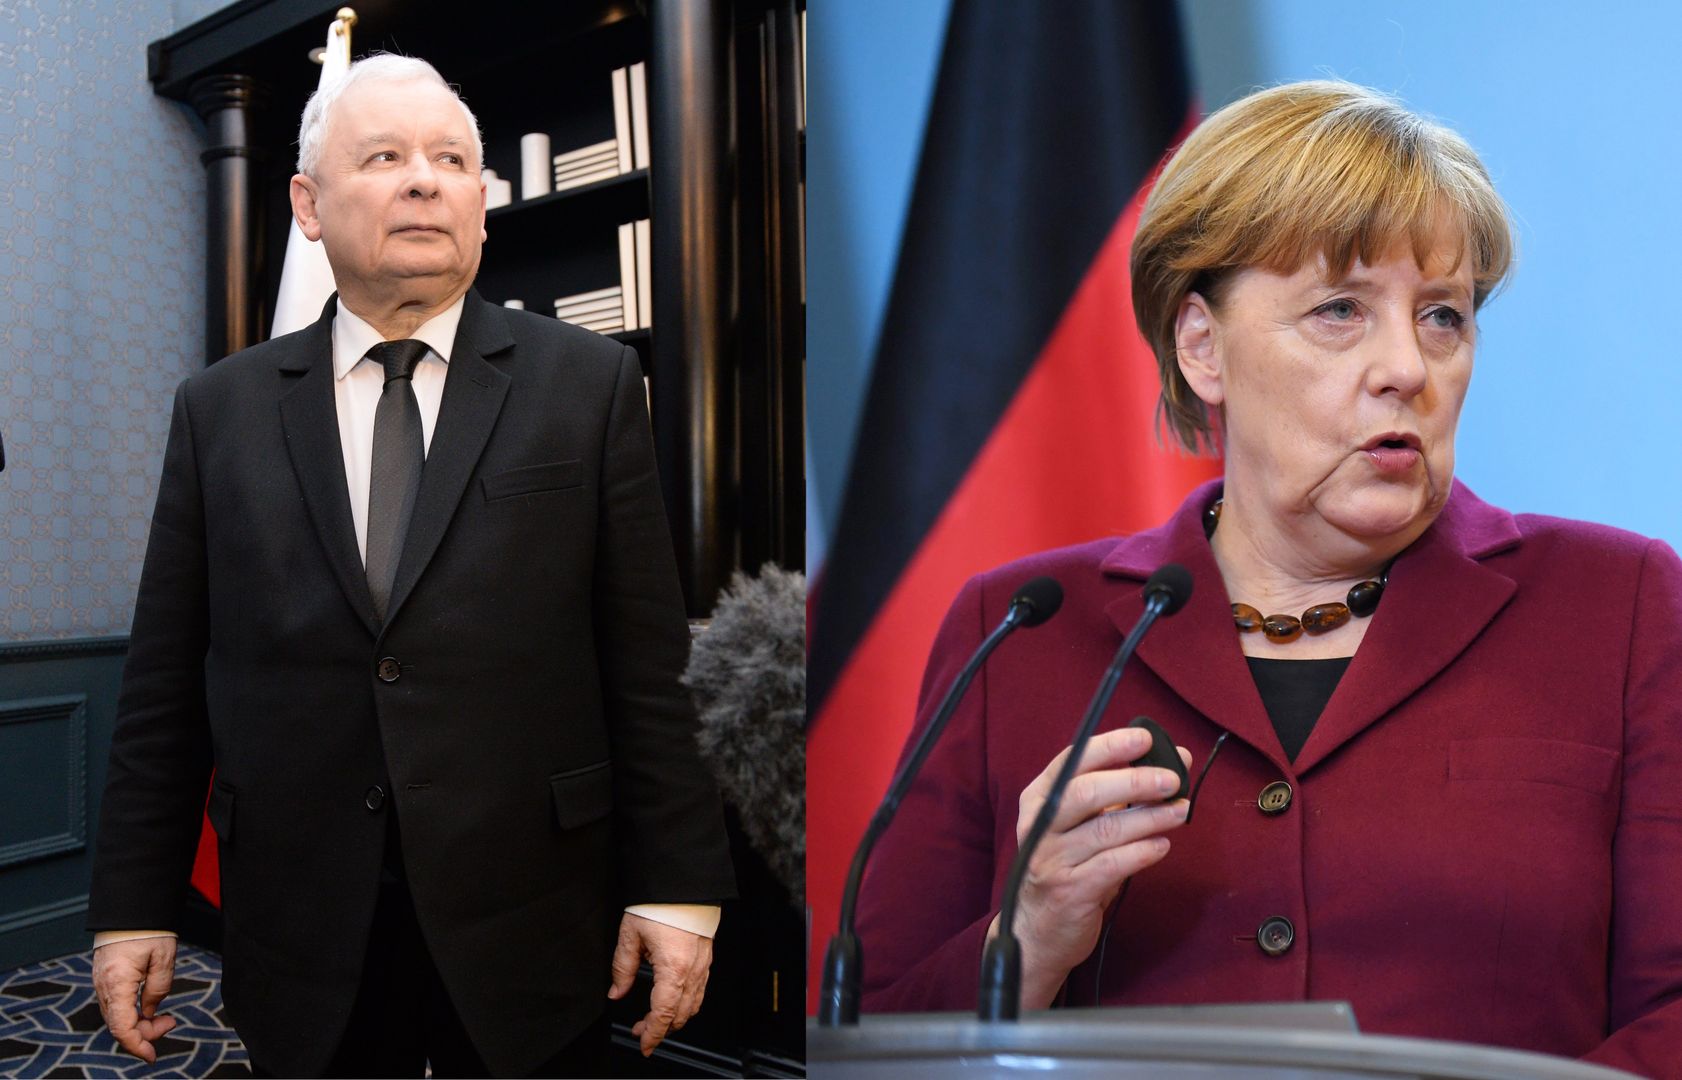 Tajna wizyta u Merkel. Polityczny dylemat Jarosława Kaczyńskiego